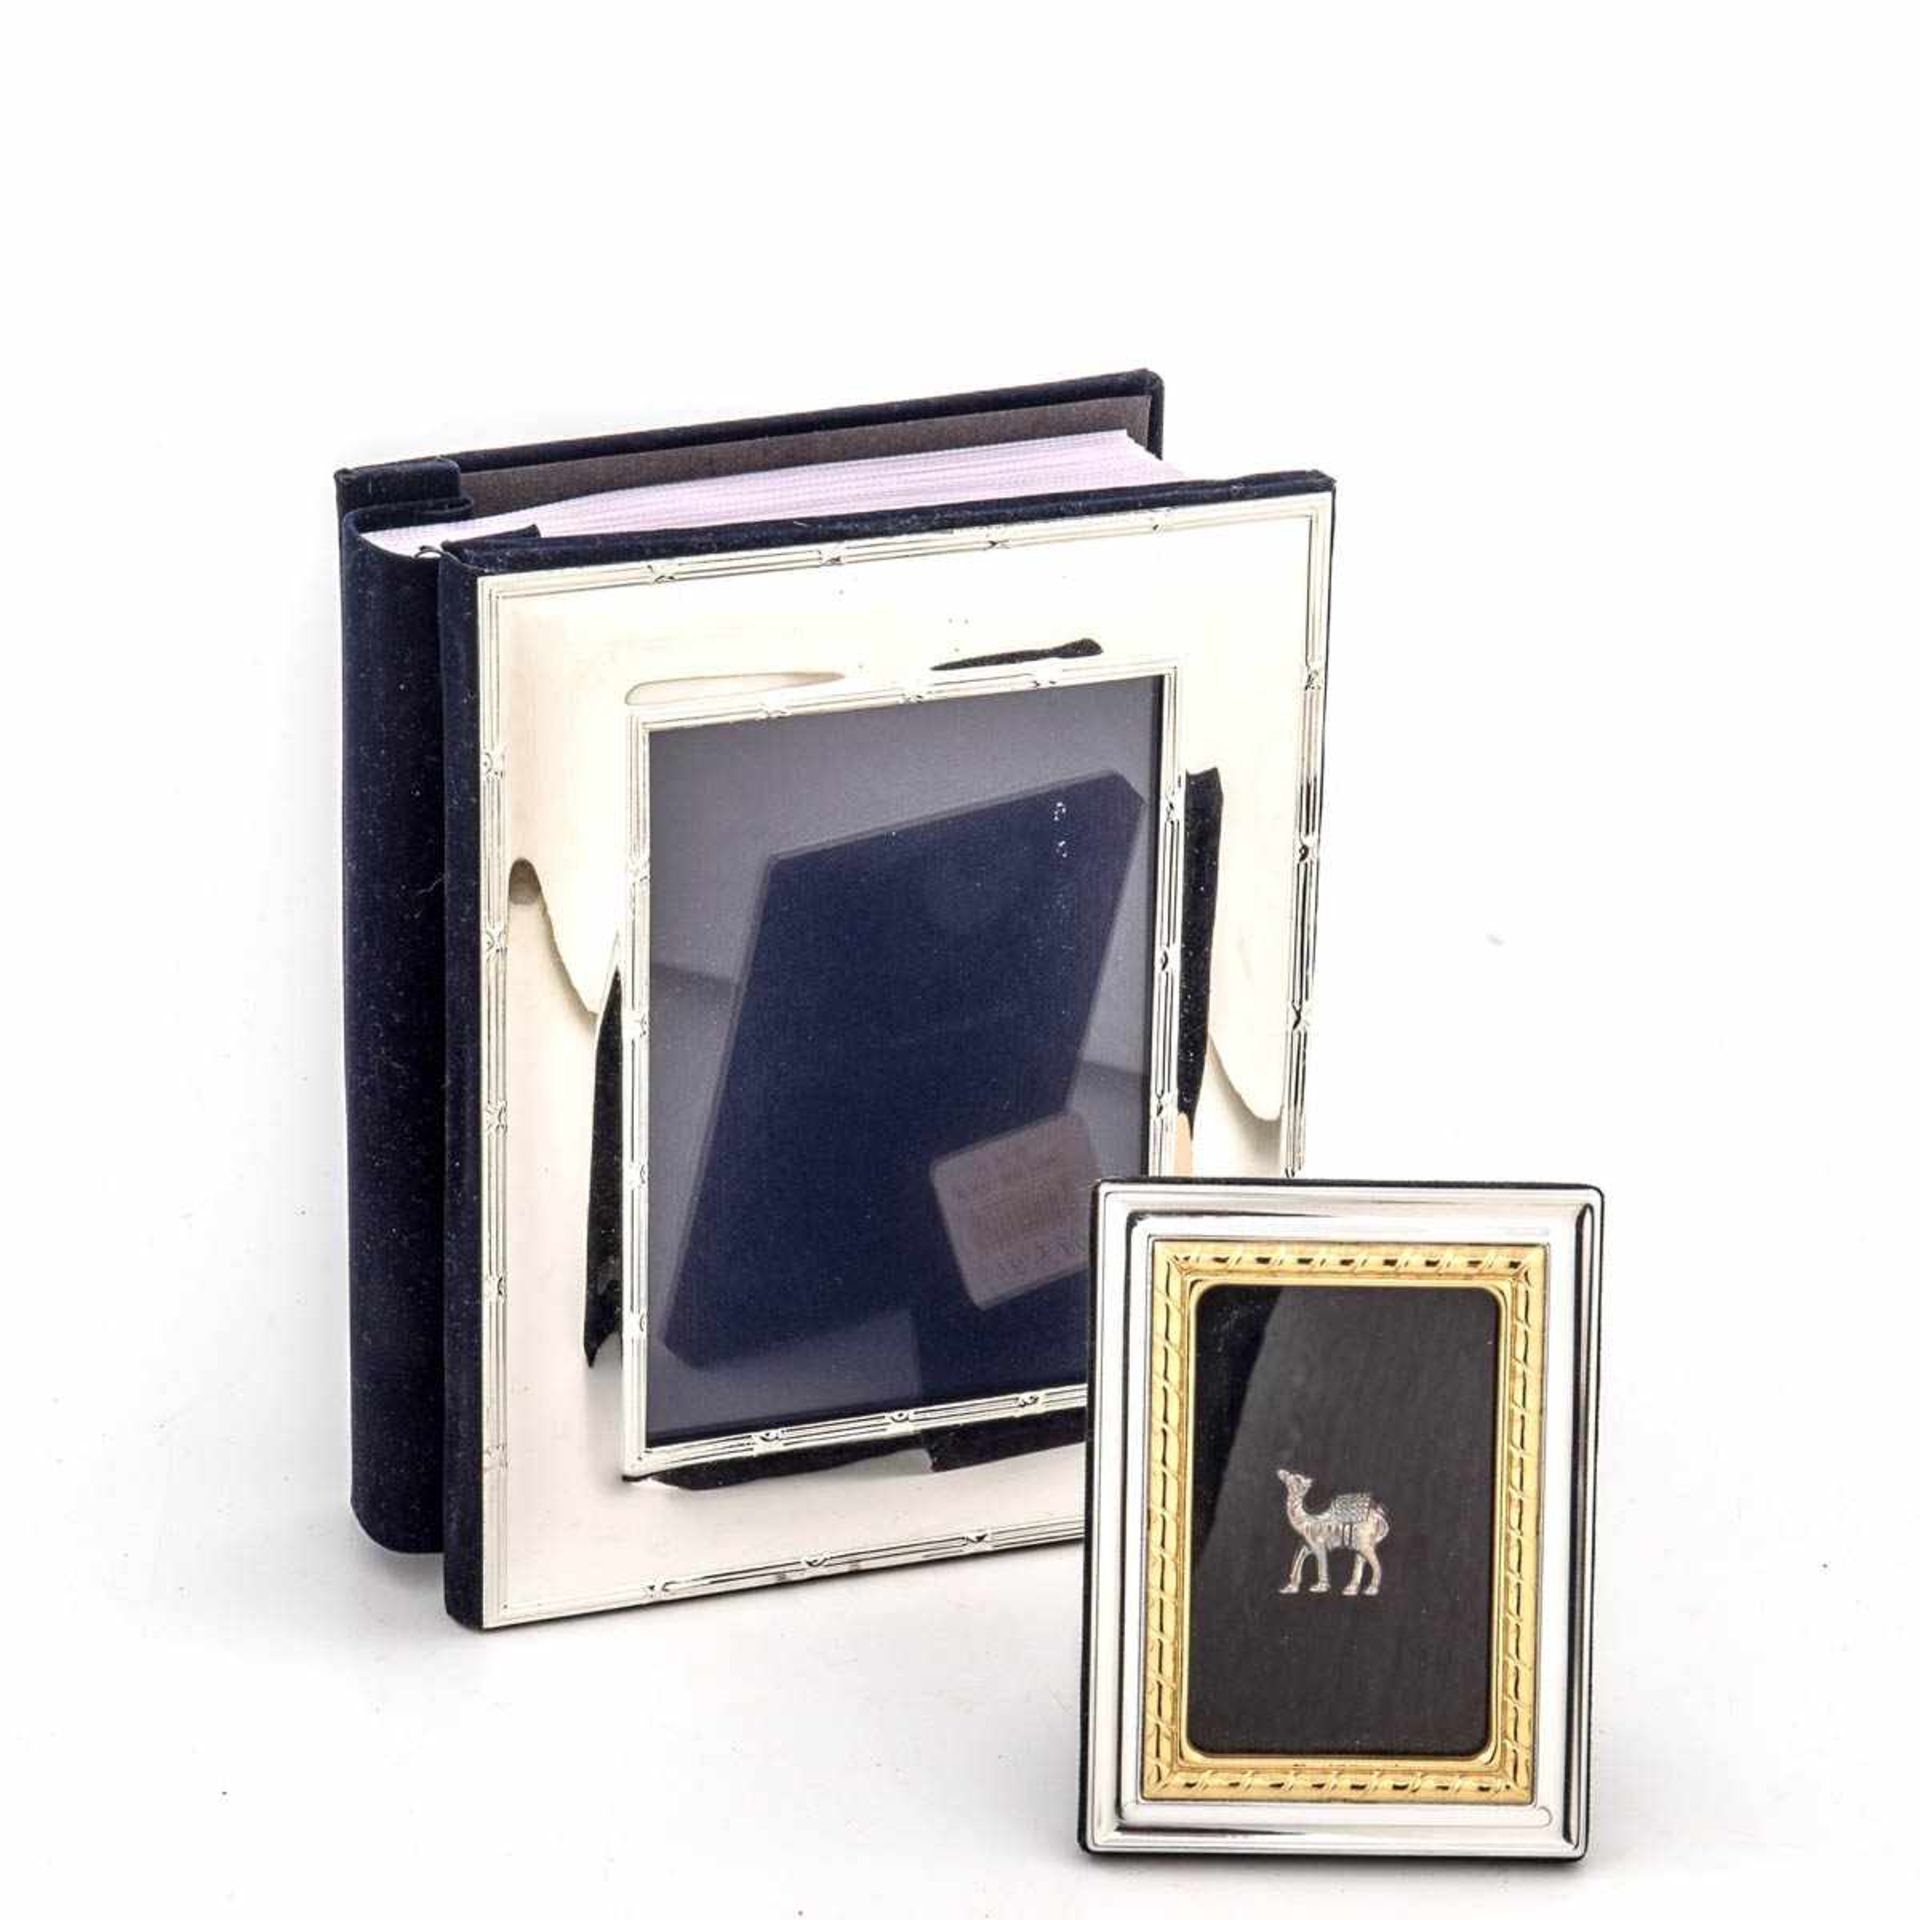 Fotoalbum und Fotorahmen Silber. Deckel des Fotoalbums in Form eines Fotorahmen mit Kreuzband-Relief